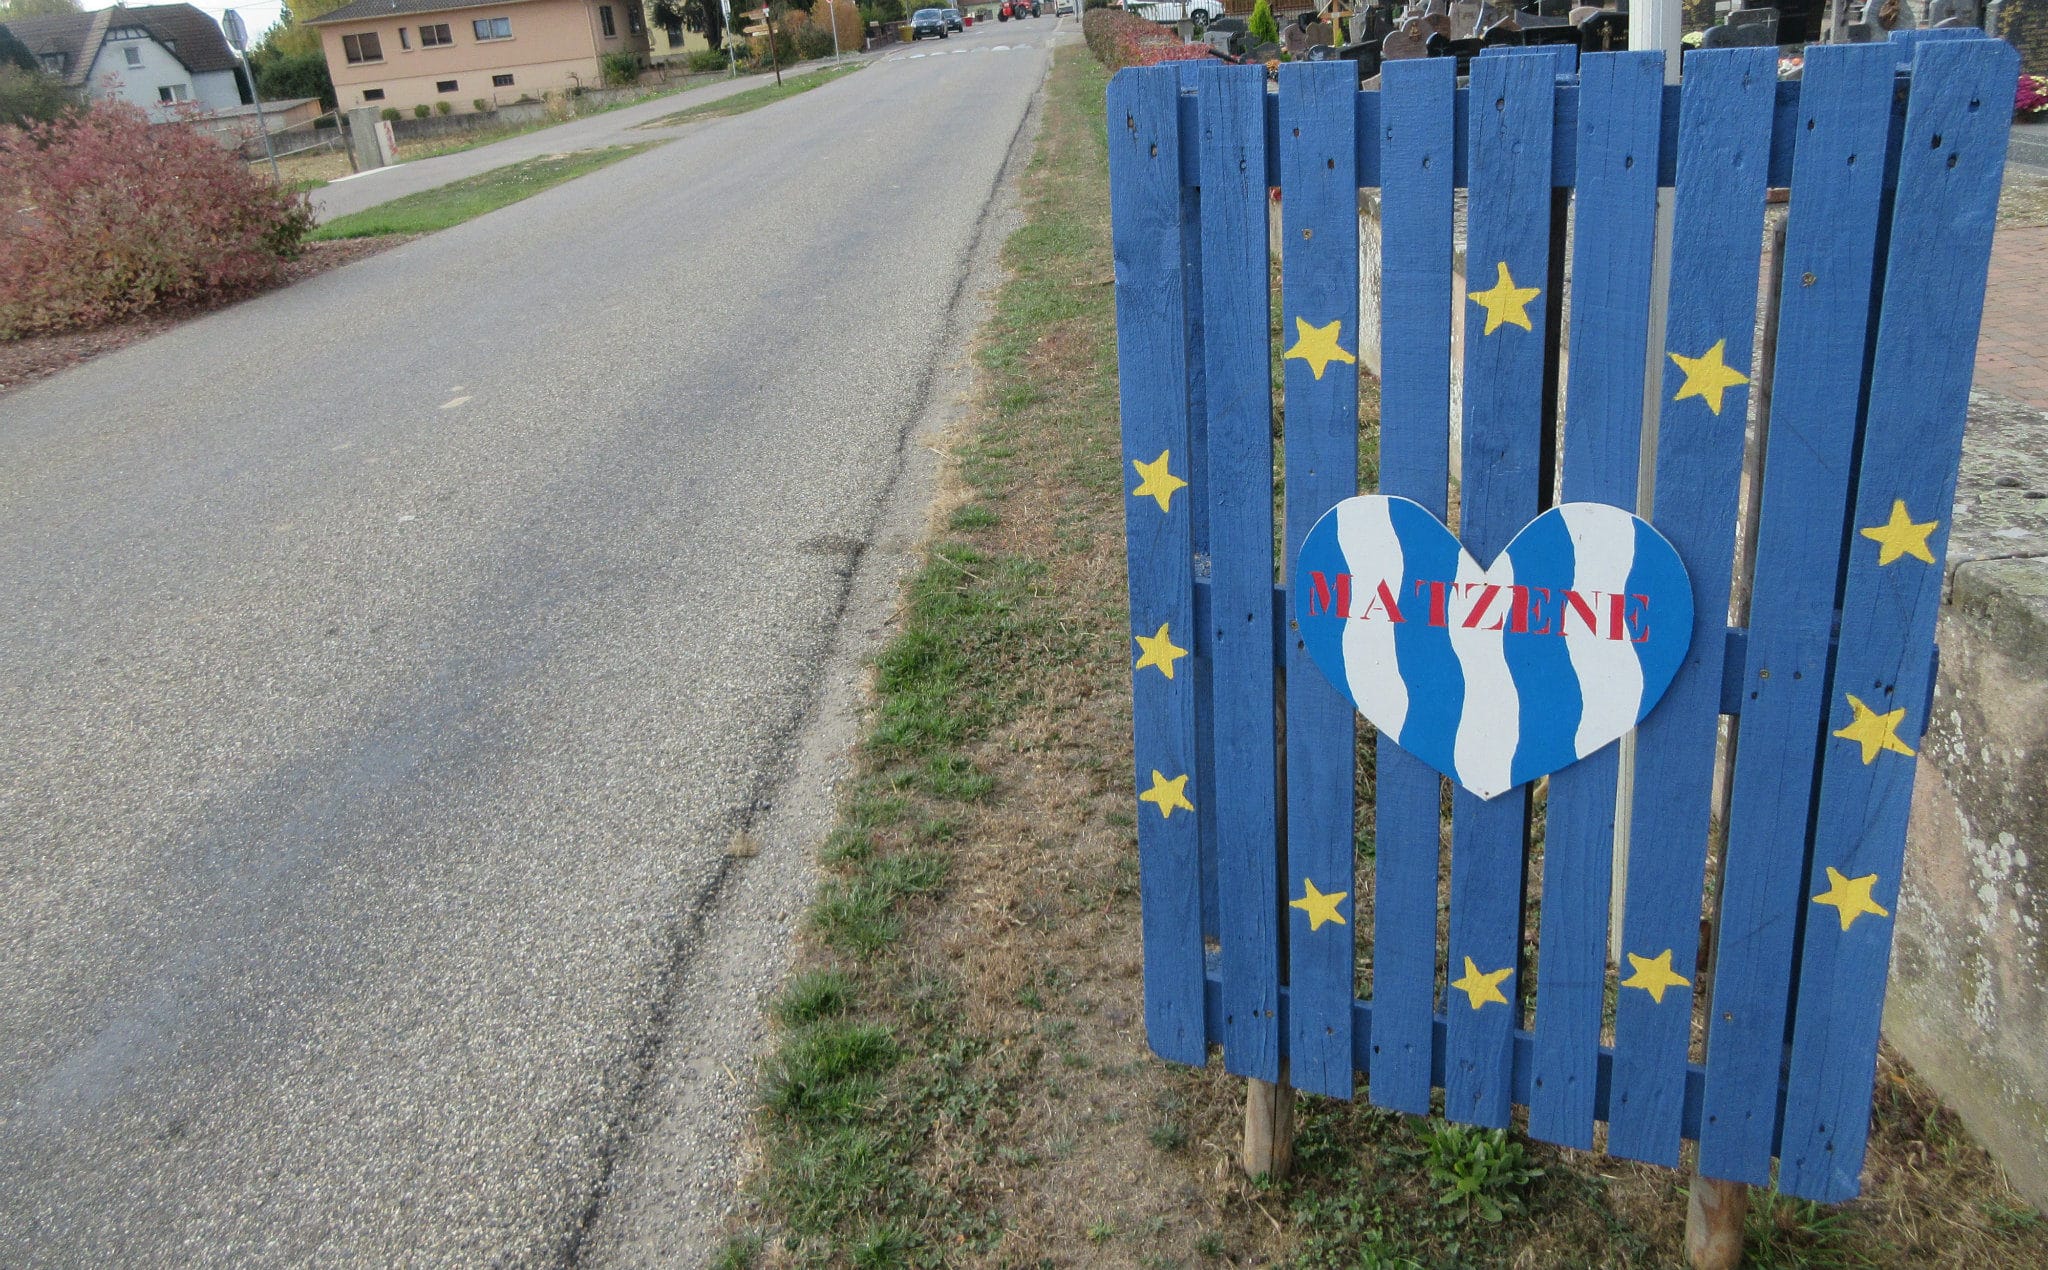 Comment un parti domicilié à Matzenheim a financé des identitaires européens